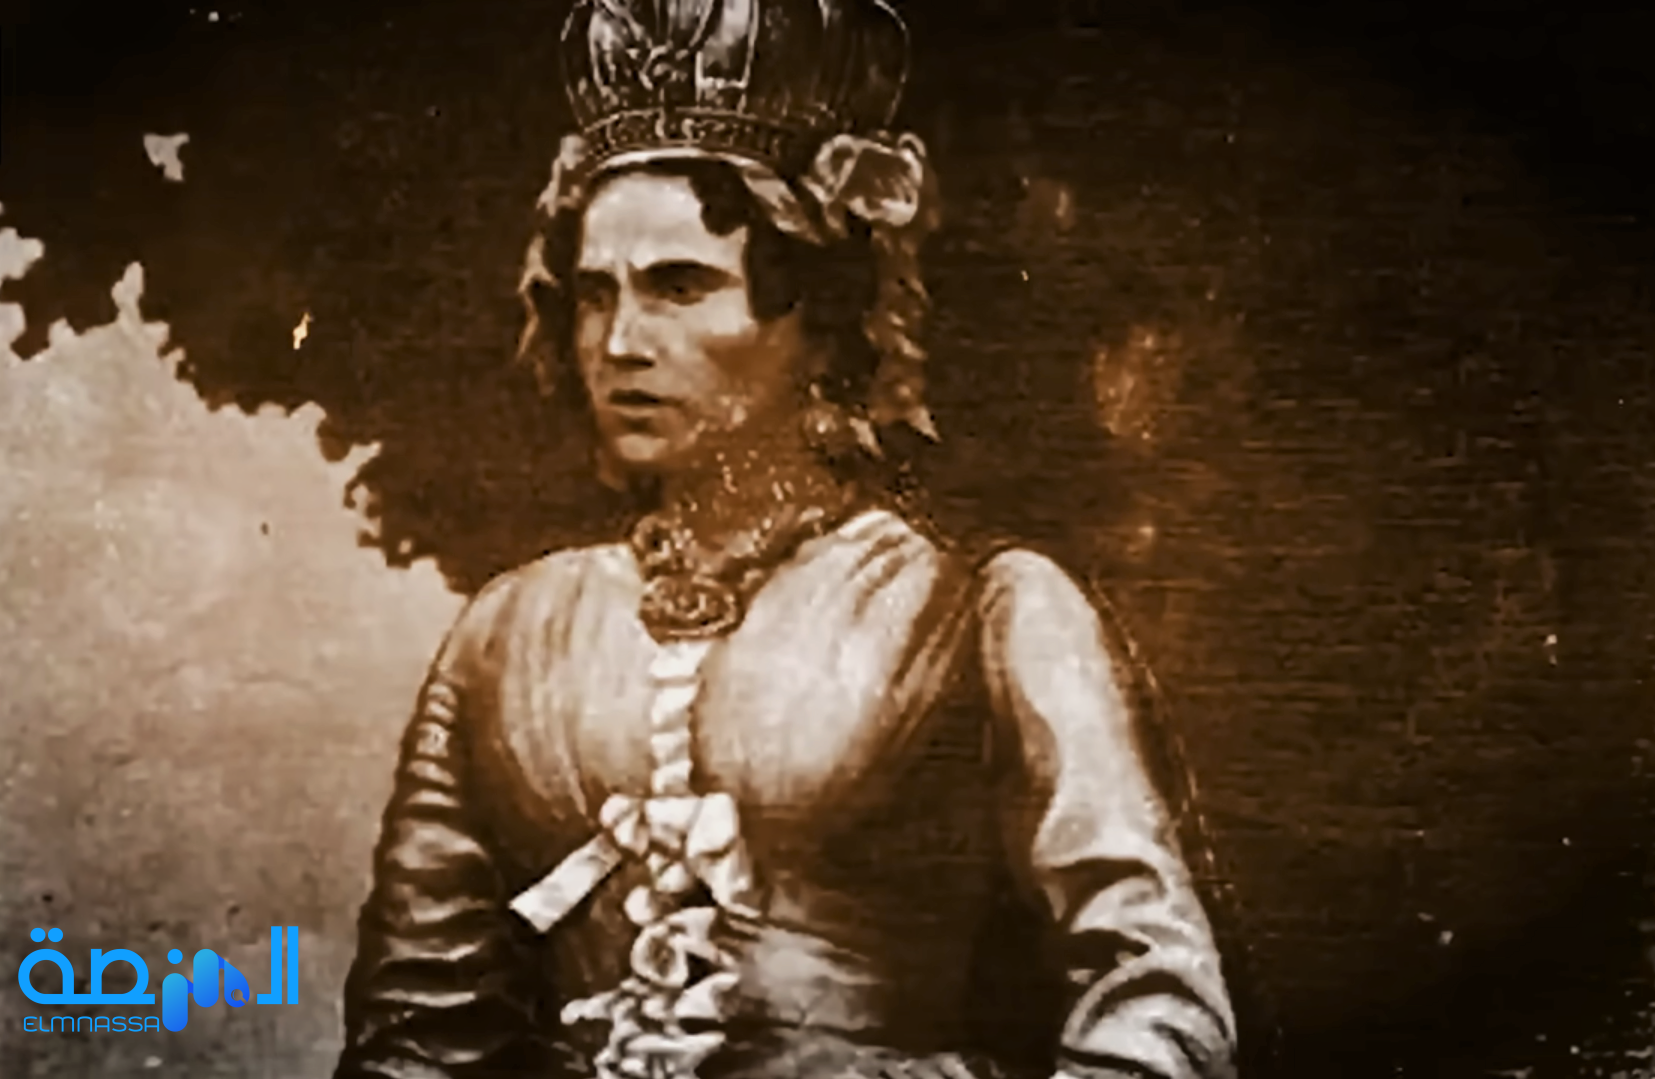 قصة رانافالونا الأولى ملكة مدغشقر الدموية